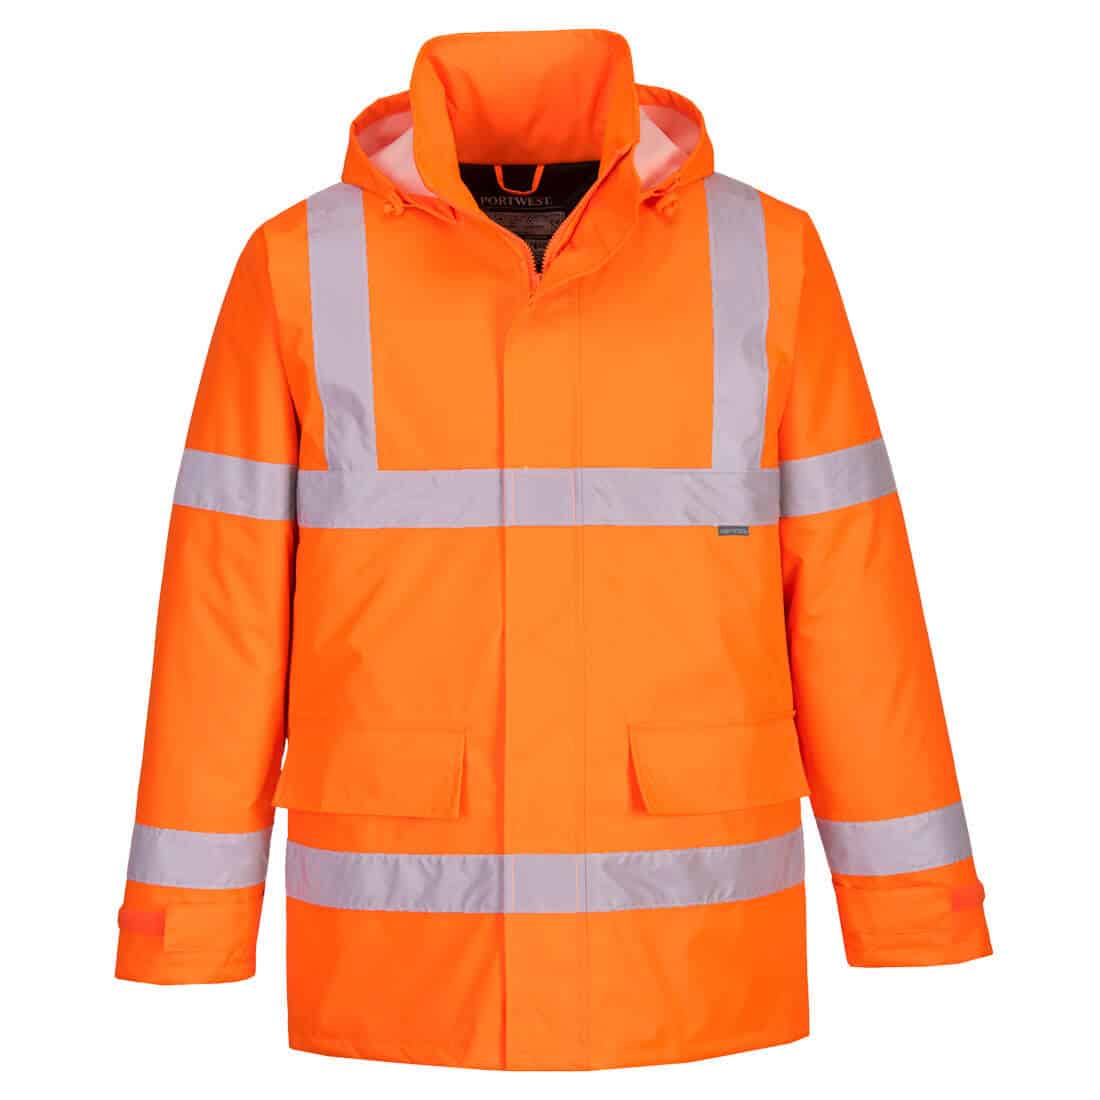 Portwest Planet Eco Hi-Vis Jacket - Essential Workwear